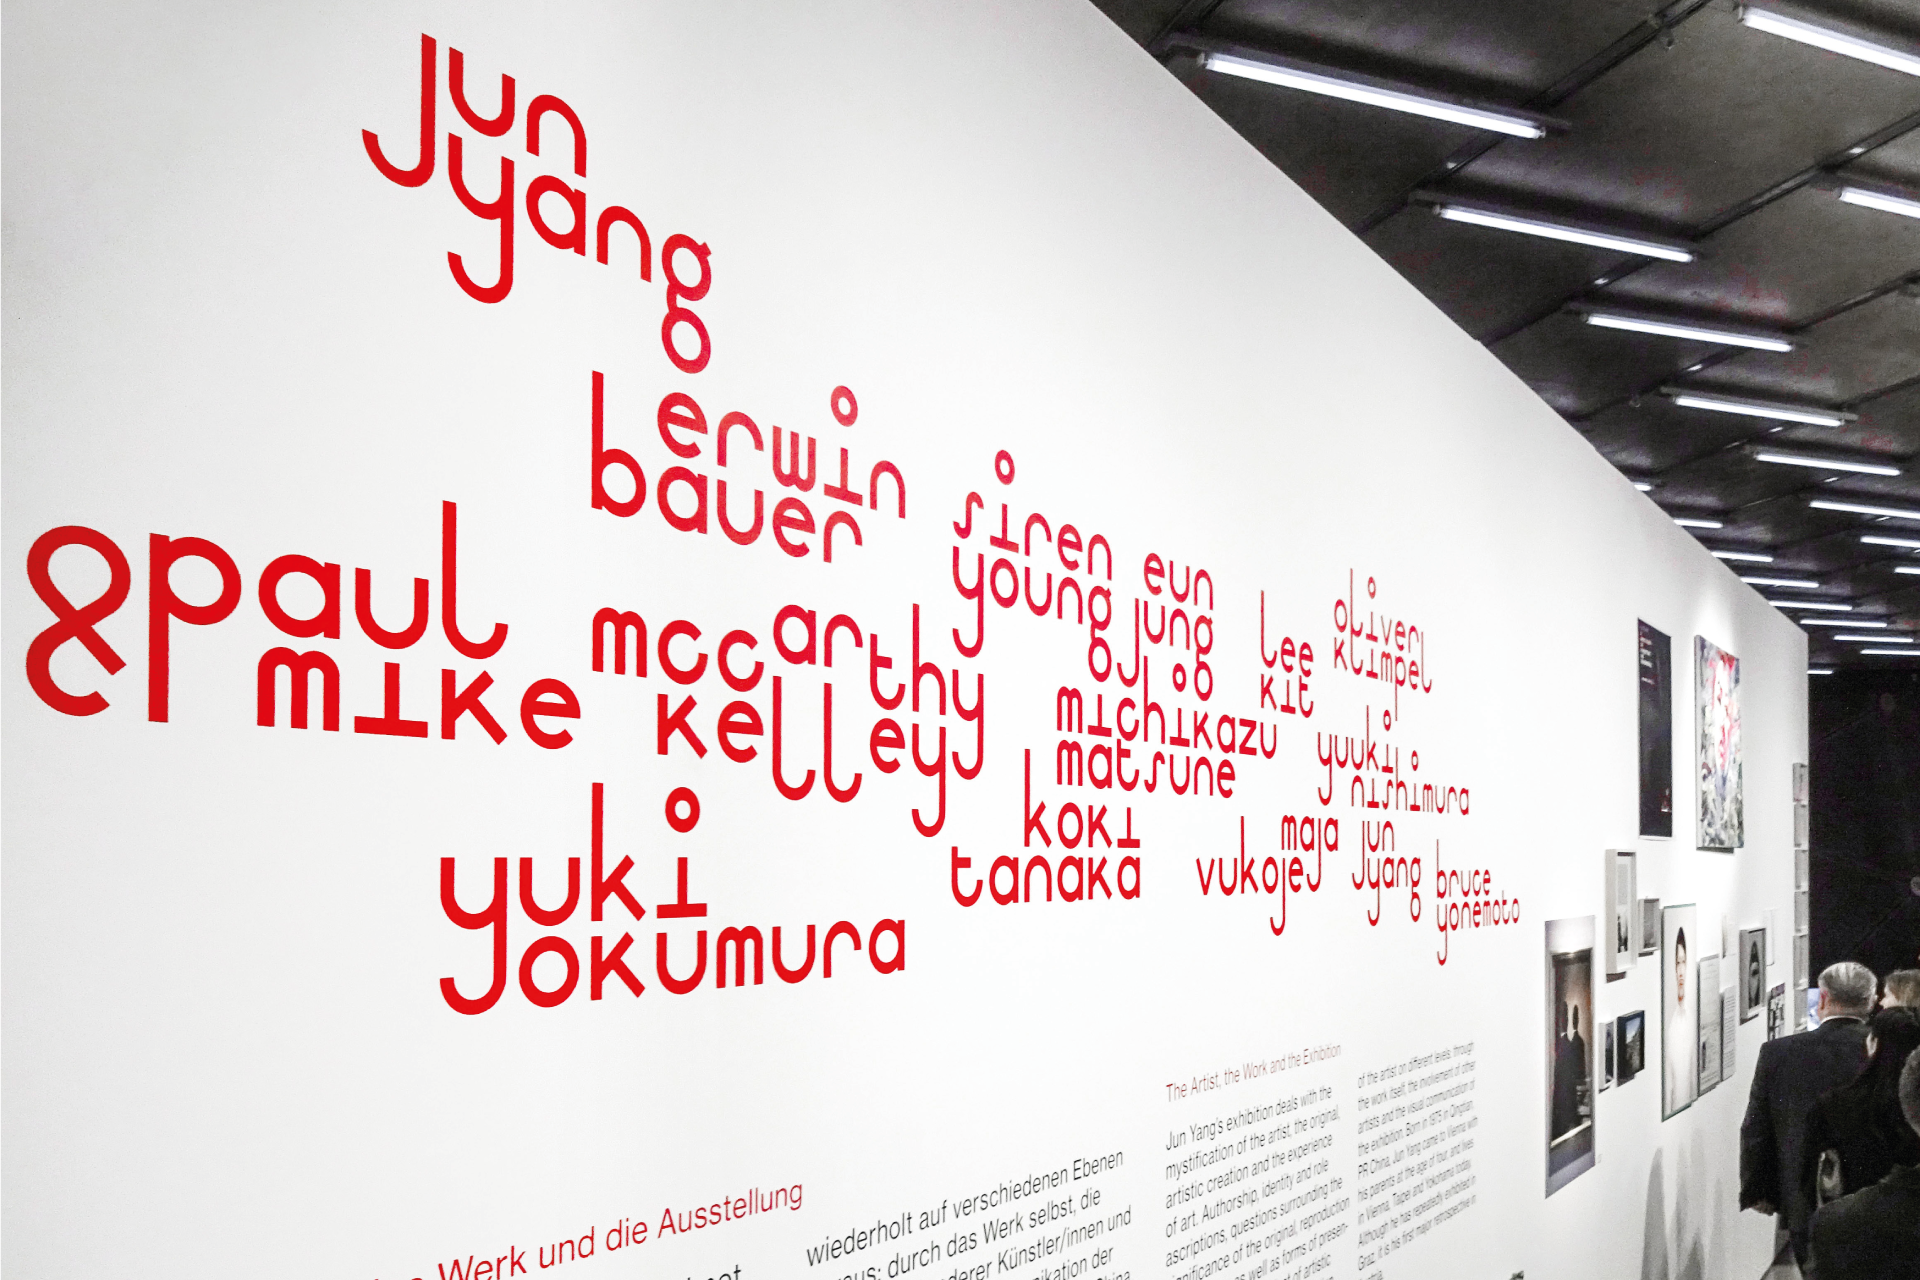 Detail der Ausstellungsgrafik der Jun Yang Ausstellung mit Wandbeschriftung